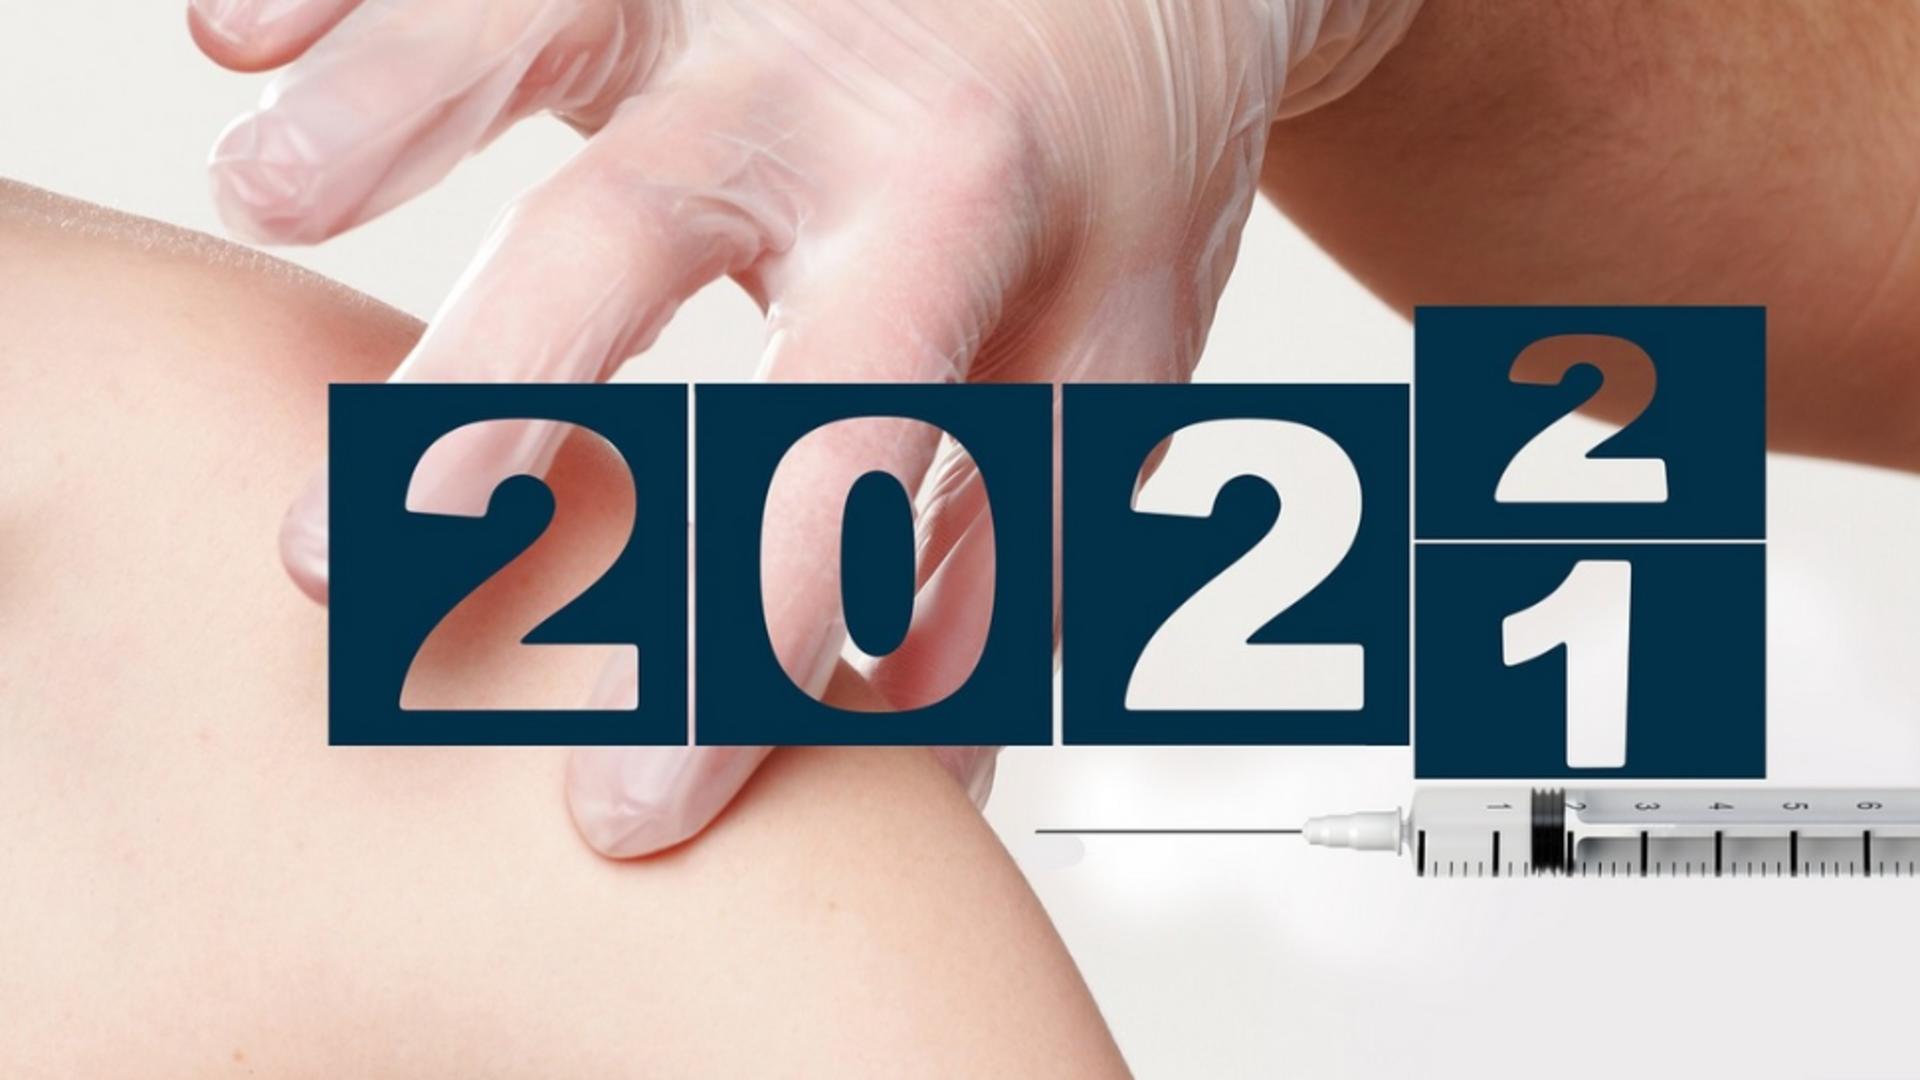 BILANȚ 31 decembrie 2021 - Câți români s-au vaccinat împotriva COVID-19 chiar înainte de Anul Nou